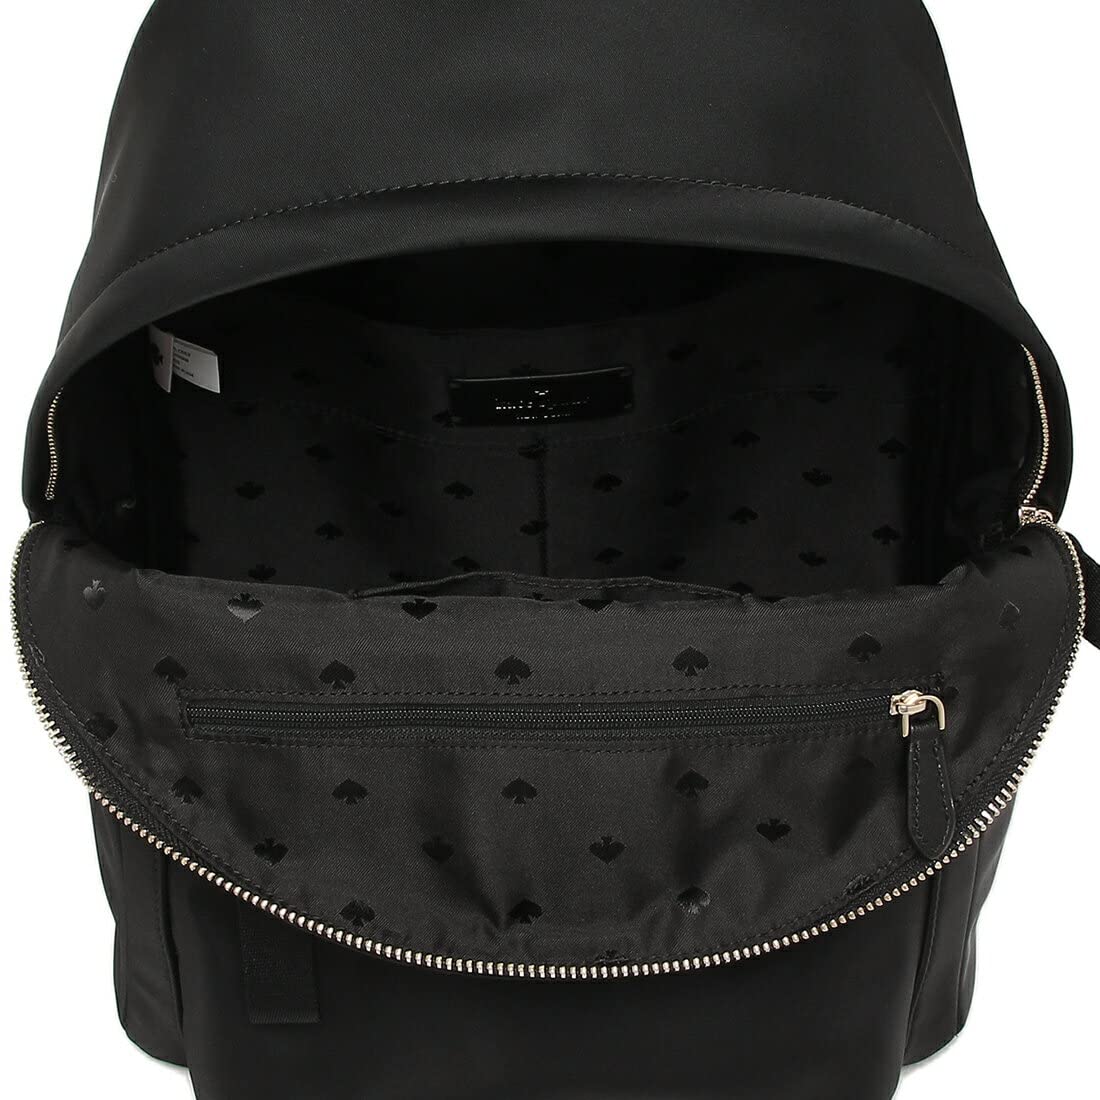 Kate Spade New York Chelsea Medium Nylon Backpack, Black